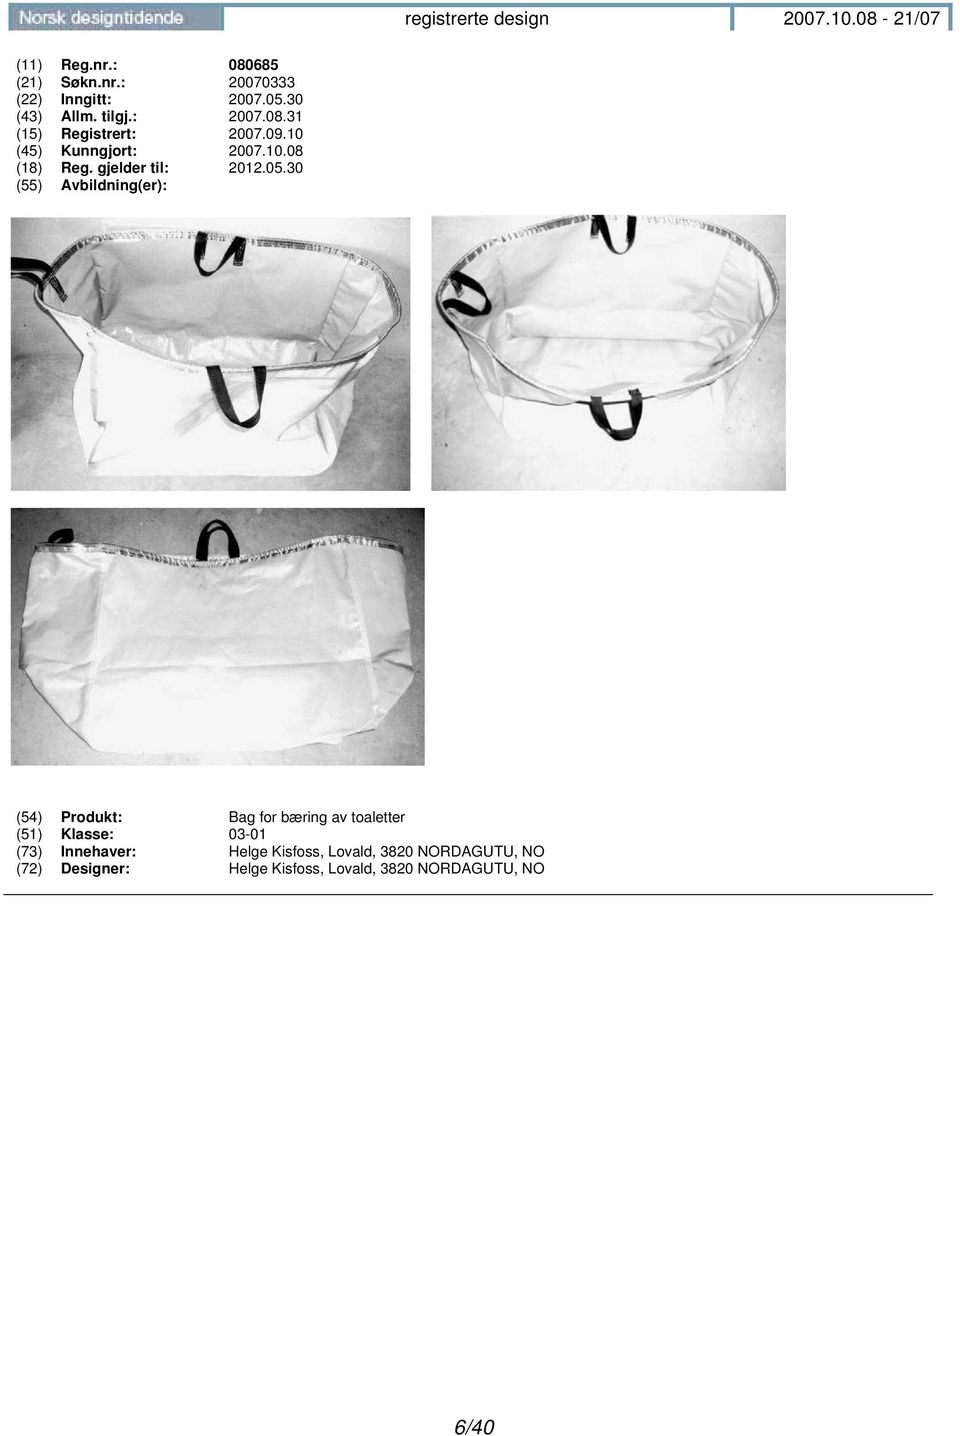 30 (54) Produkt: Bag for bæring av toaletter (51) Klasse: 03-01 (73) Innehaver: Helge